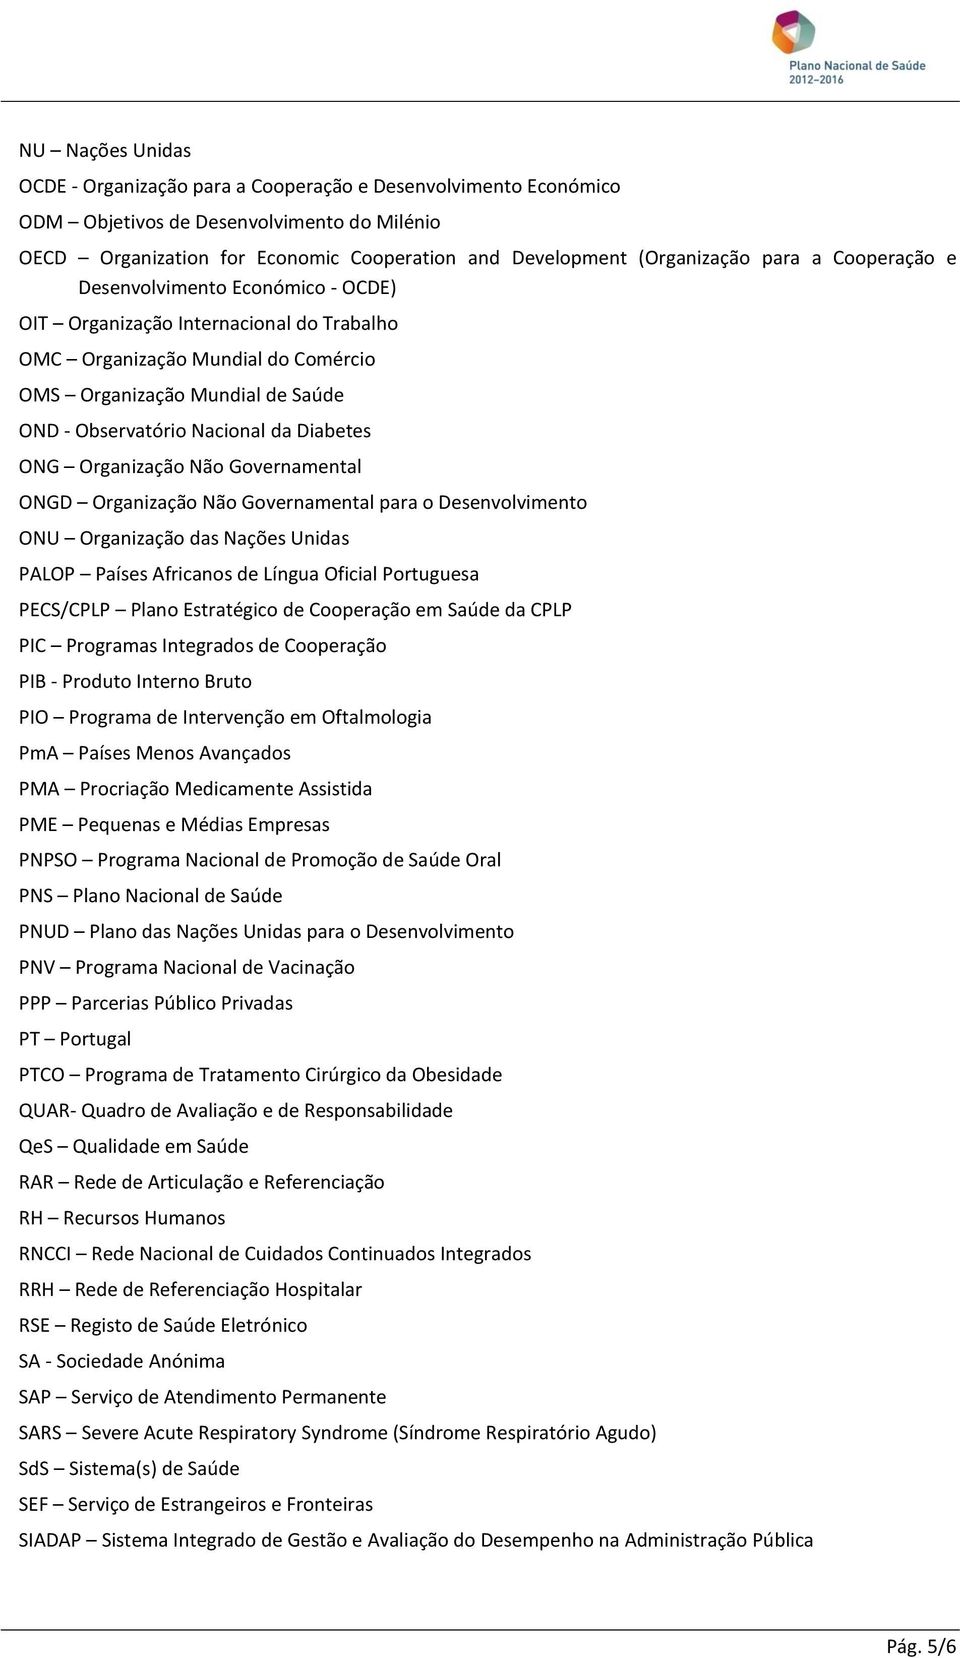 Diabetes ONG Organização Não Governamental ONGD Organização Não Governamental para o Desenvolvimento ONU Organização das Nações Unidas PALOP Países Africanos de Língua Oficial Portuguesa PECS/CPLP